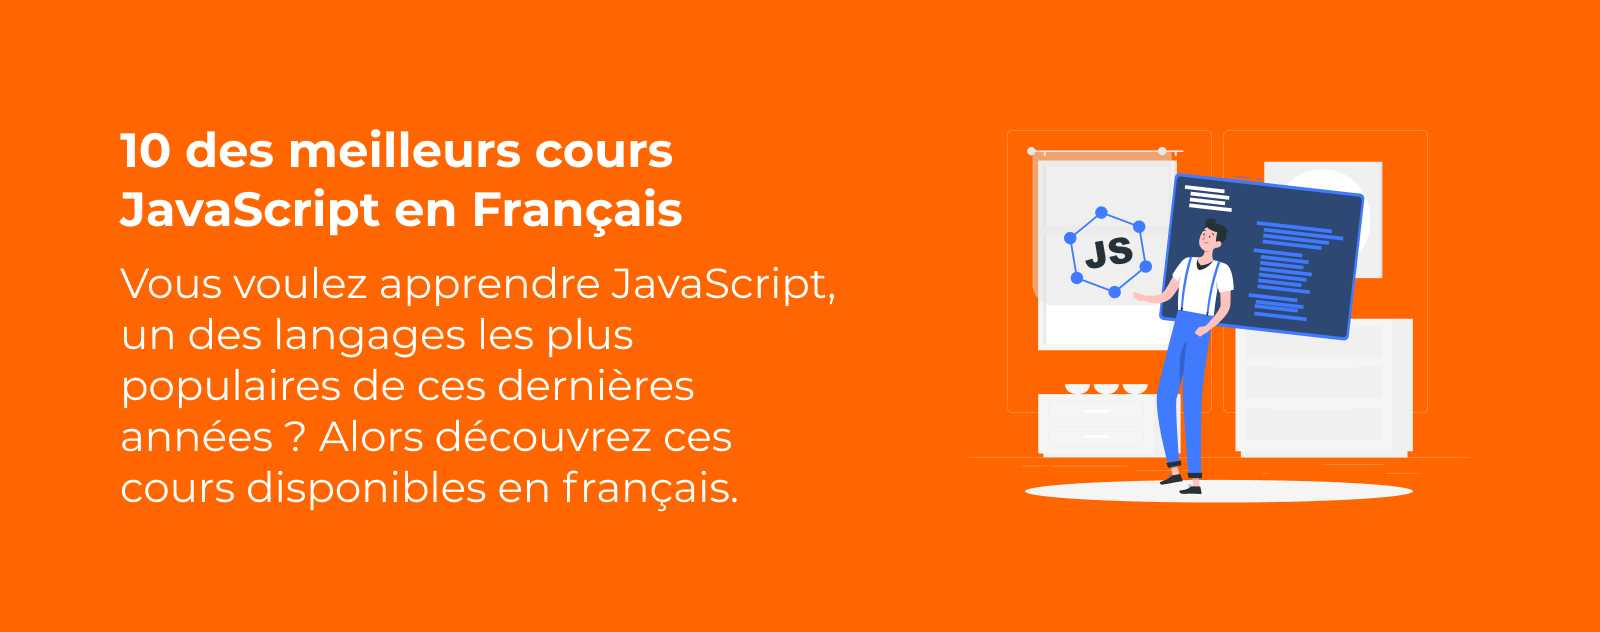 10 des meilleurs cours JavaScript en Français